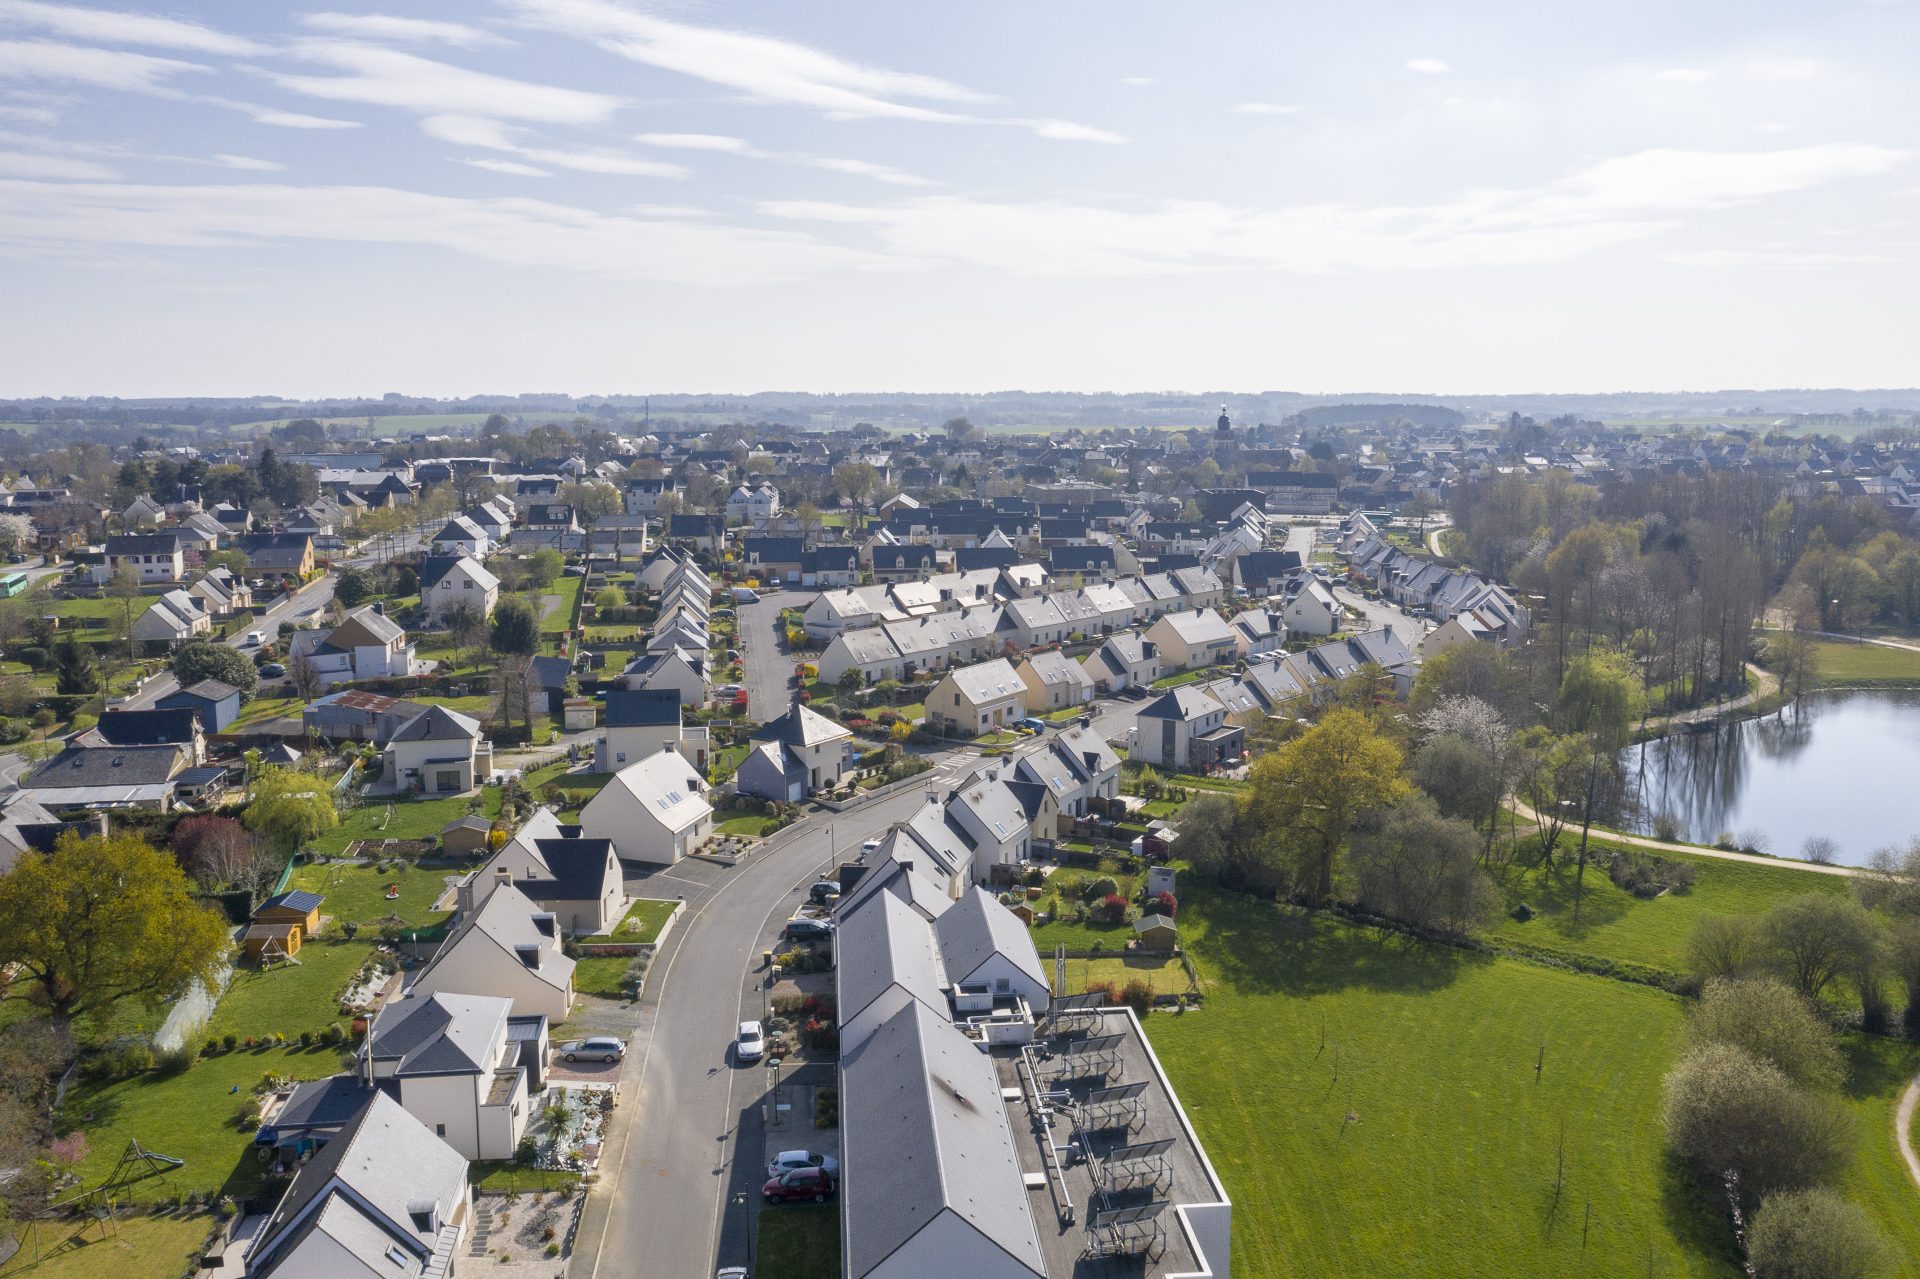 Conseil Immobilier Choisir un terrain viabilisé en lotissement : les avantages pour les acheteurs de terrains constructibles